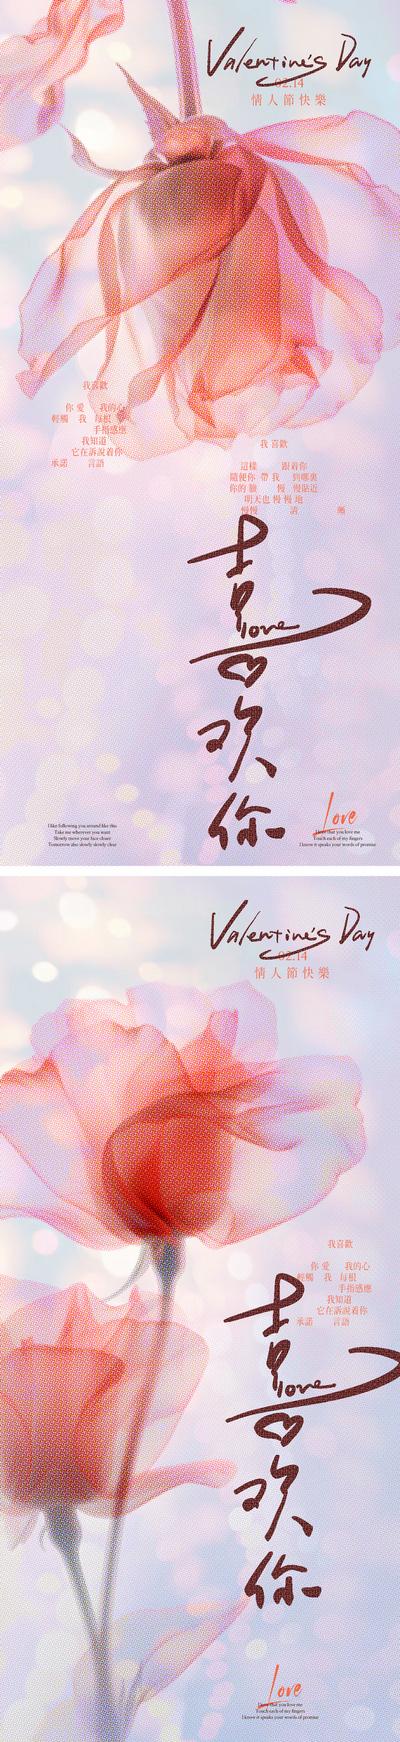 南门网 广告 海报 公历节日 情人节 214 玫瑰 光斑 浪漫 缤纷 时尚 手写字 光影 喜欢 爱情